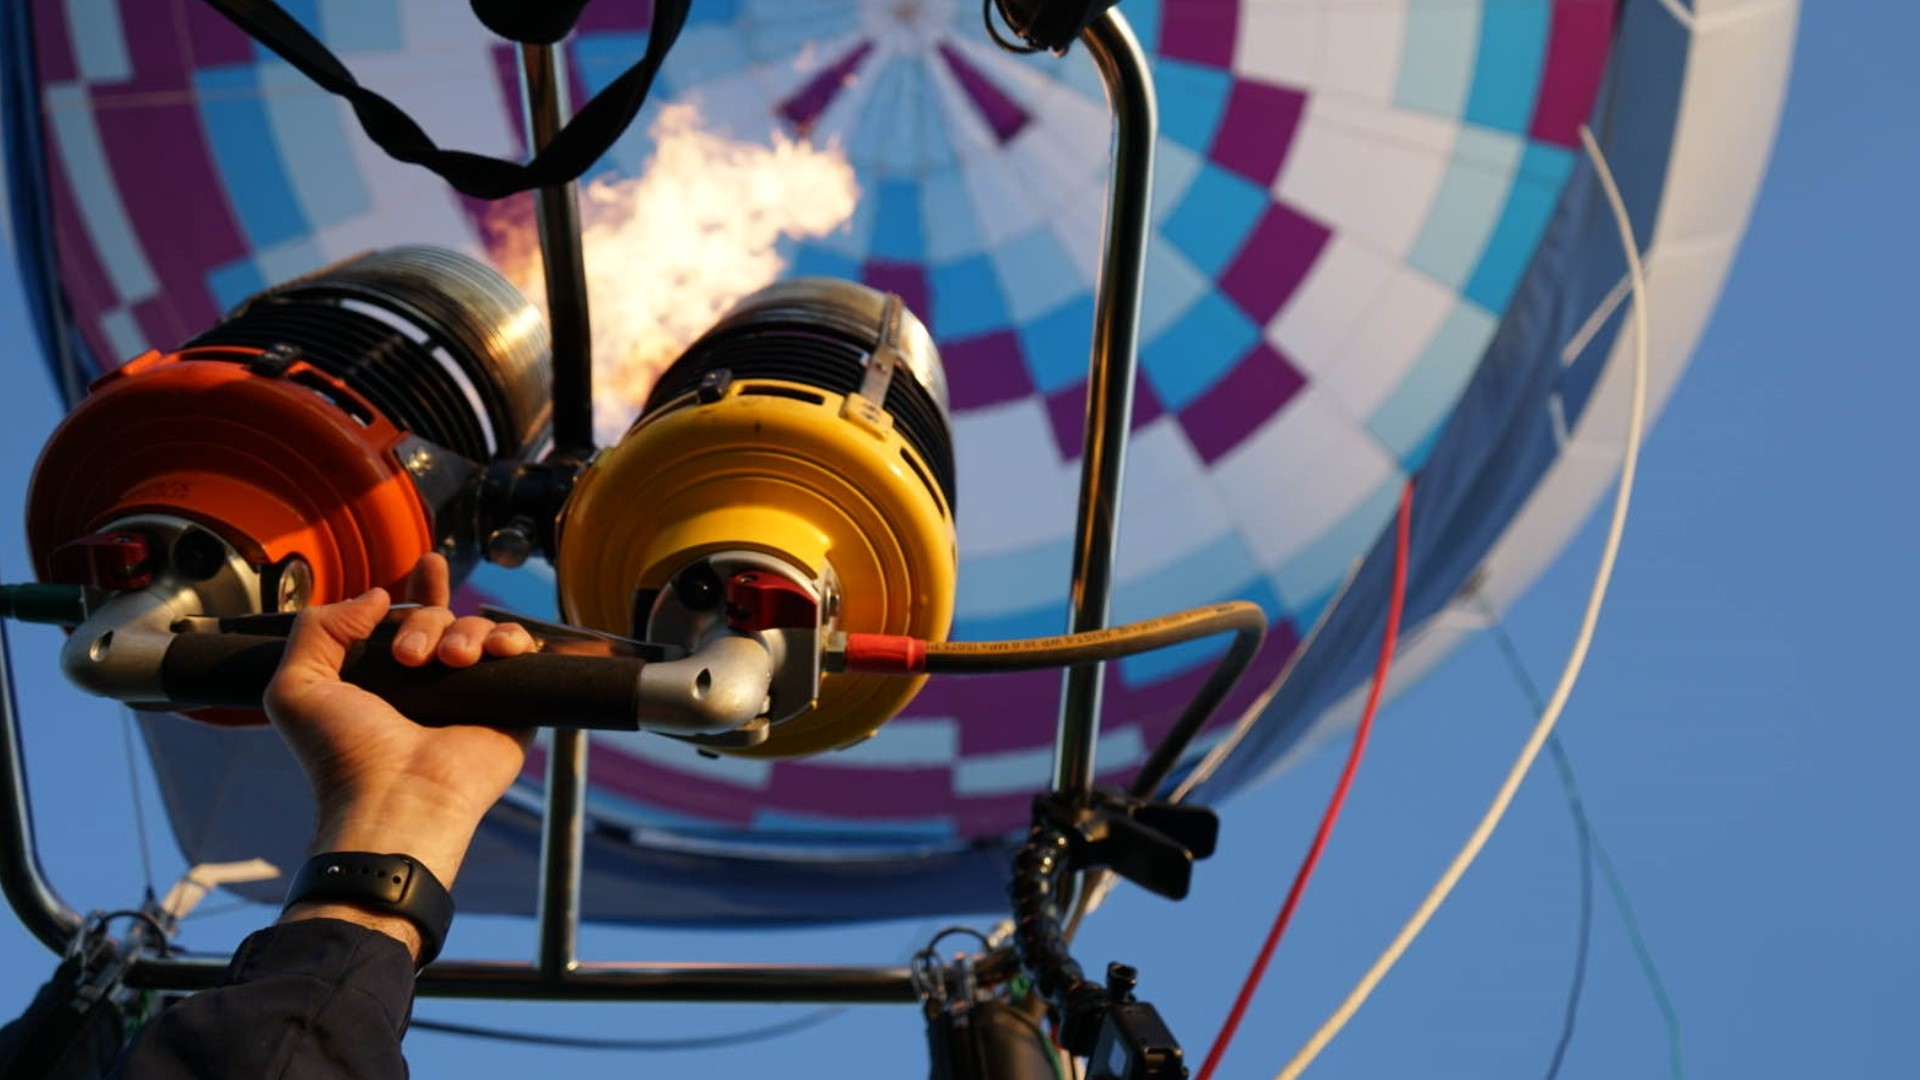 Hot air balloon festival returns to Conner Prairie